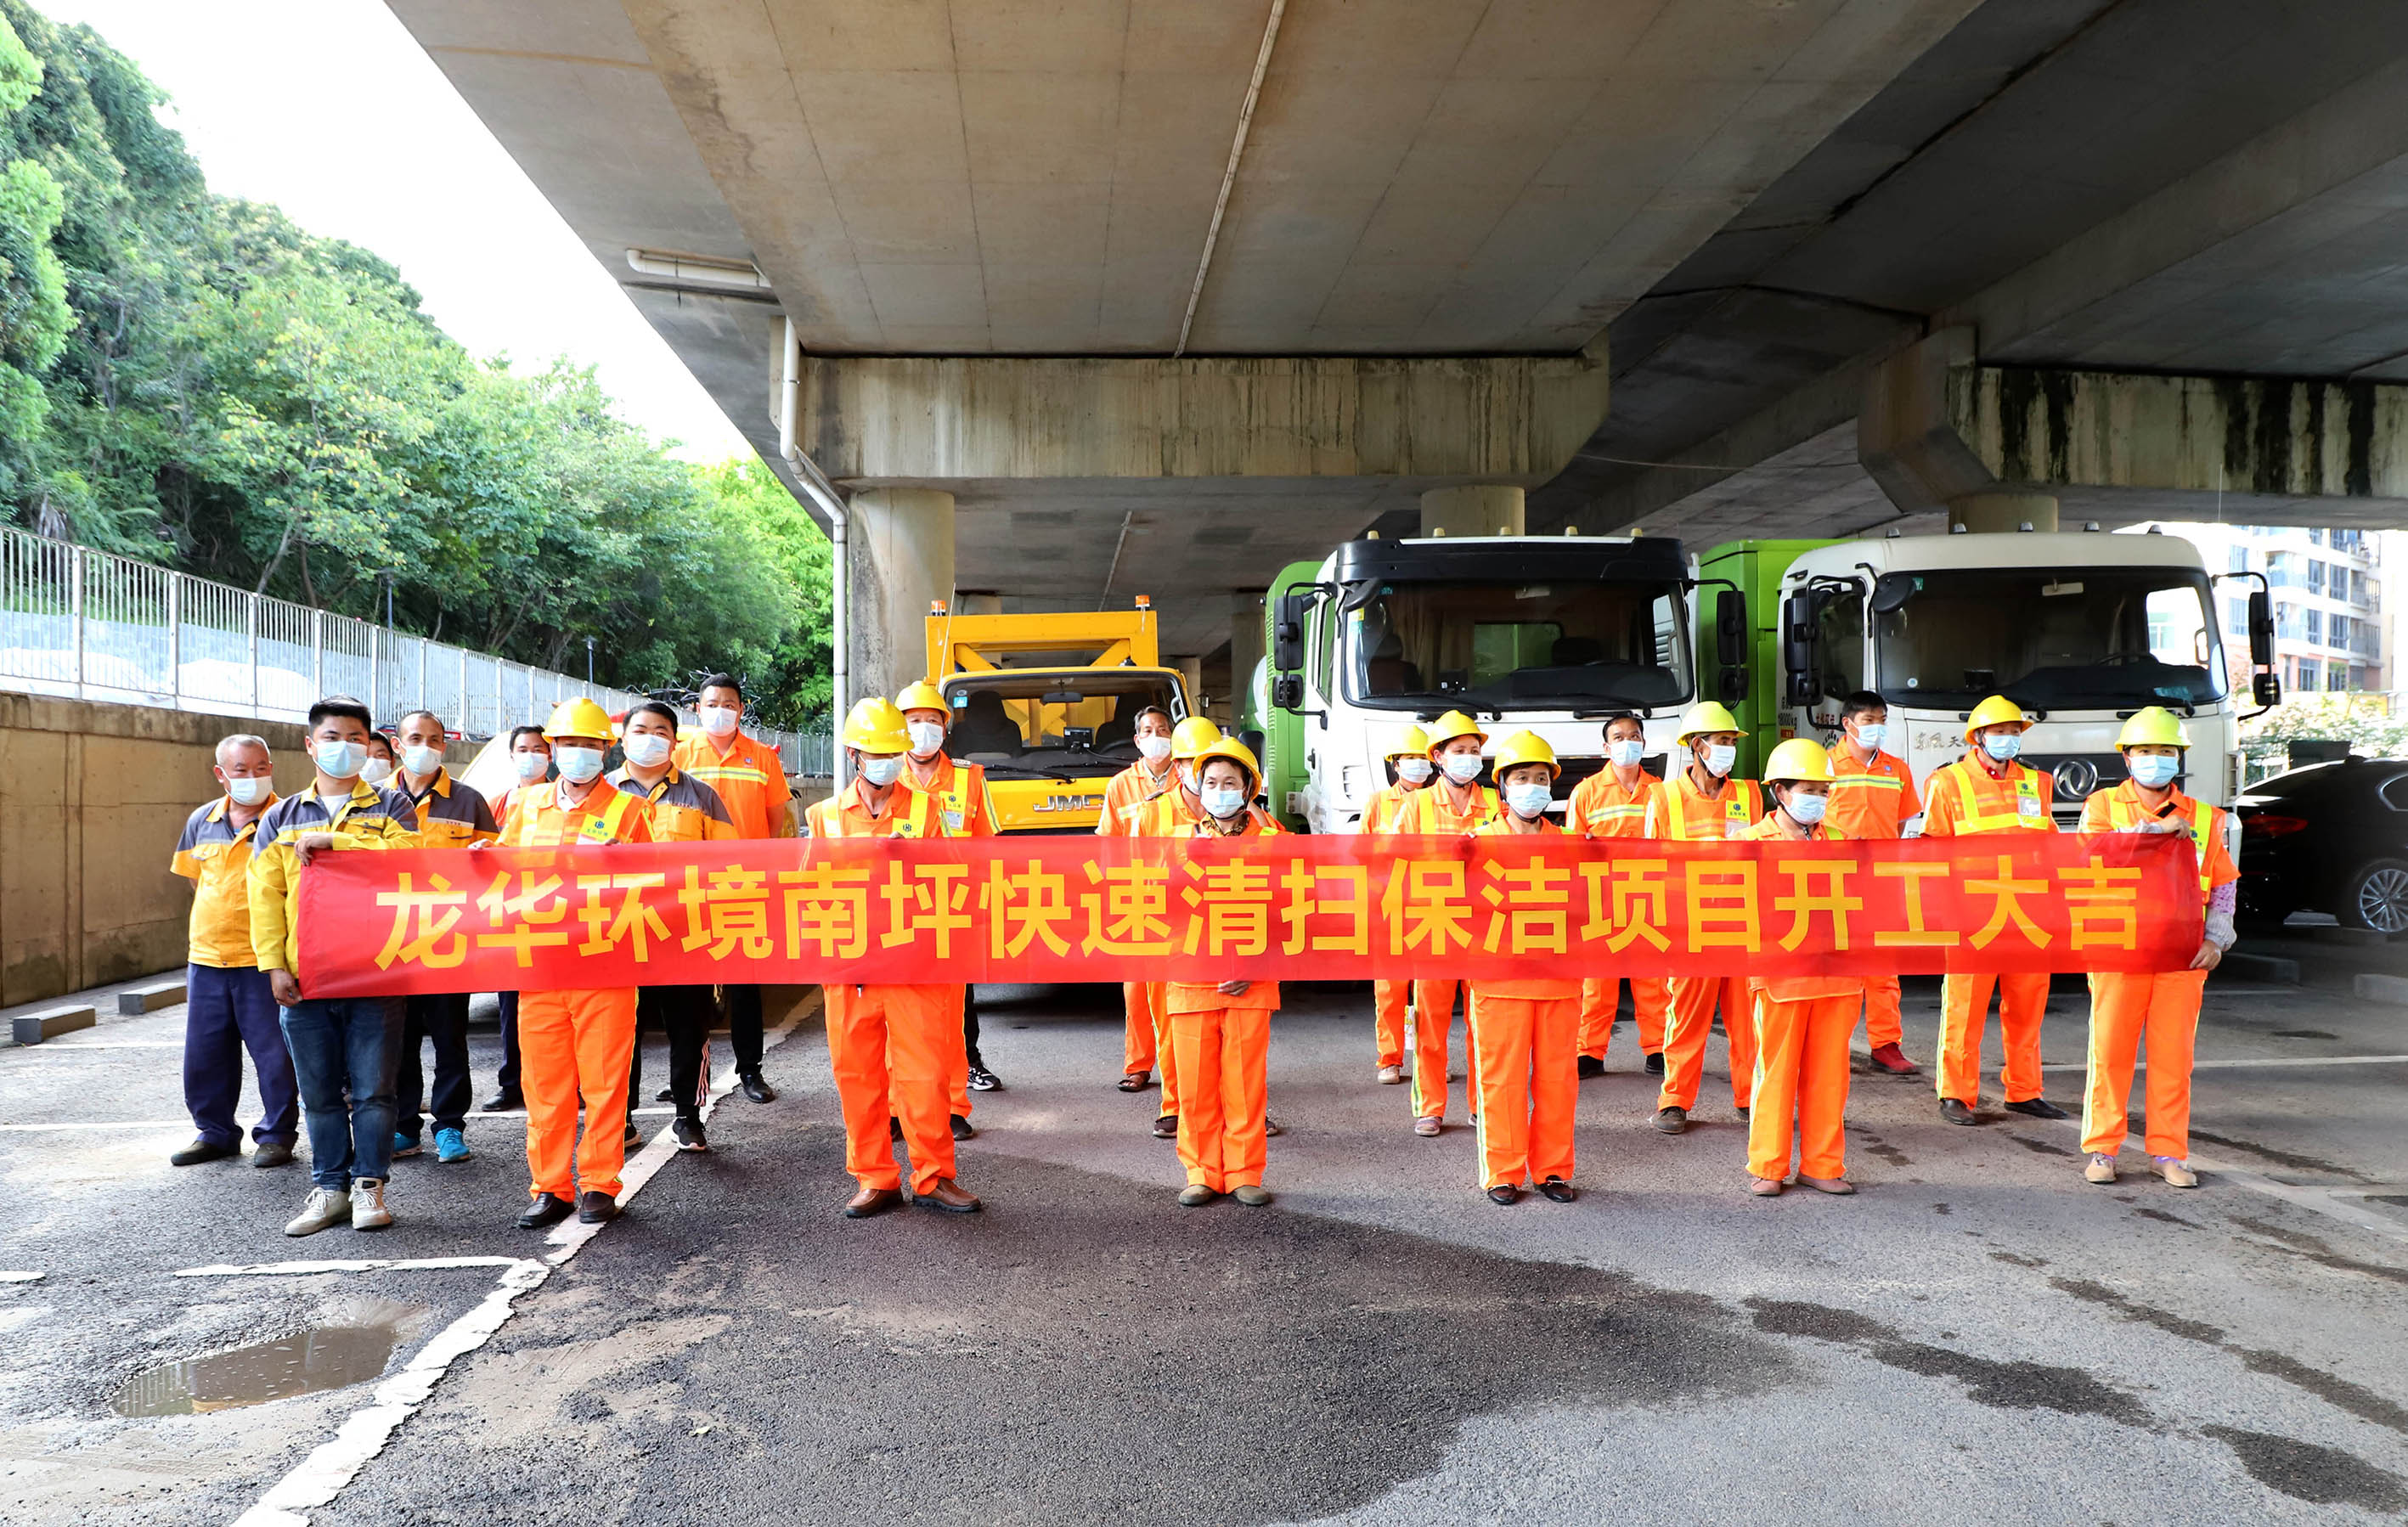 助推文明城市建設 龍華環境公司啟動南坪快速路清掃保潔項目